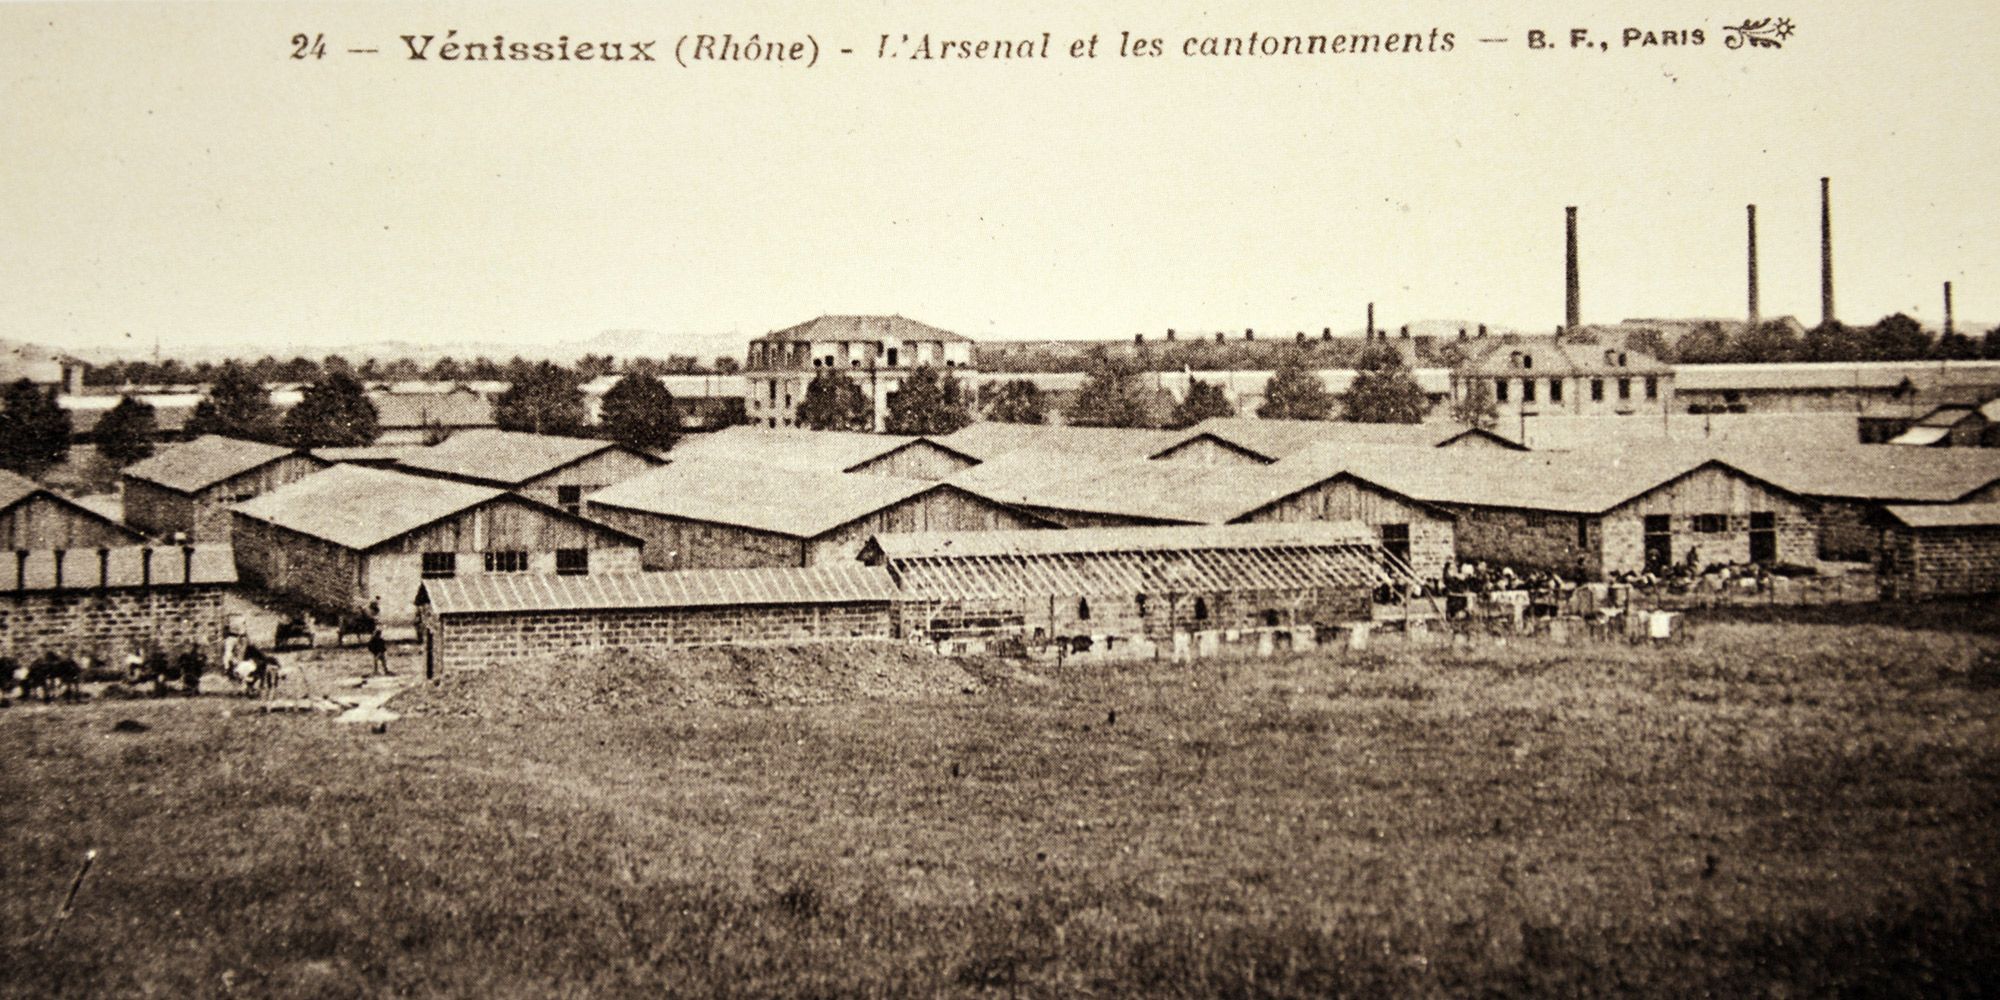 Camp-de-Venissieux